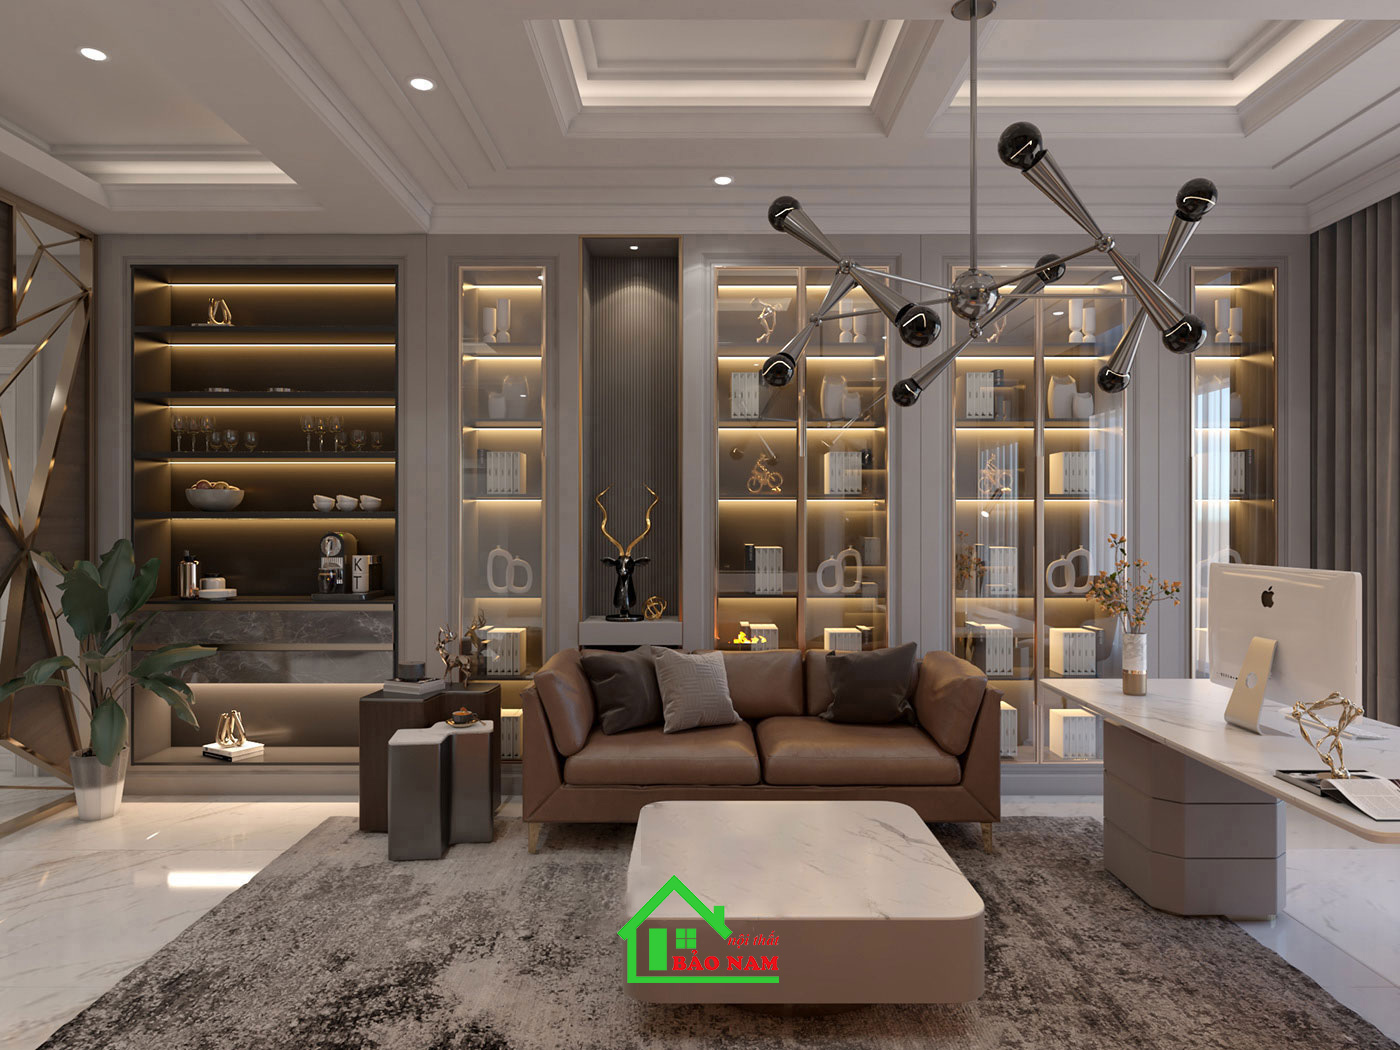 Vật liệu như nhựa acrylic, đá và gỗ công nghiệp được ưu tiên sử dụng để mang đến vẻ đẹp đương đại và tính ứng dụng cao cho không gian nội thất.